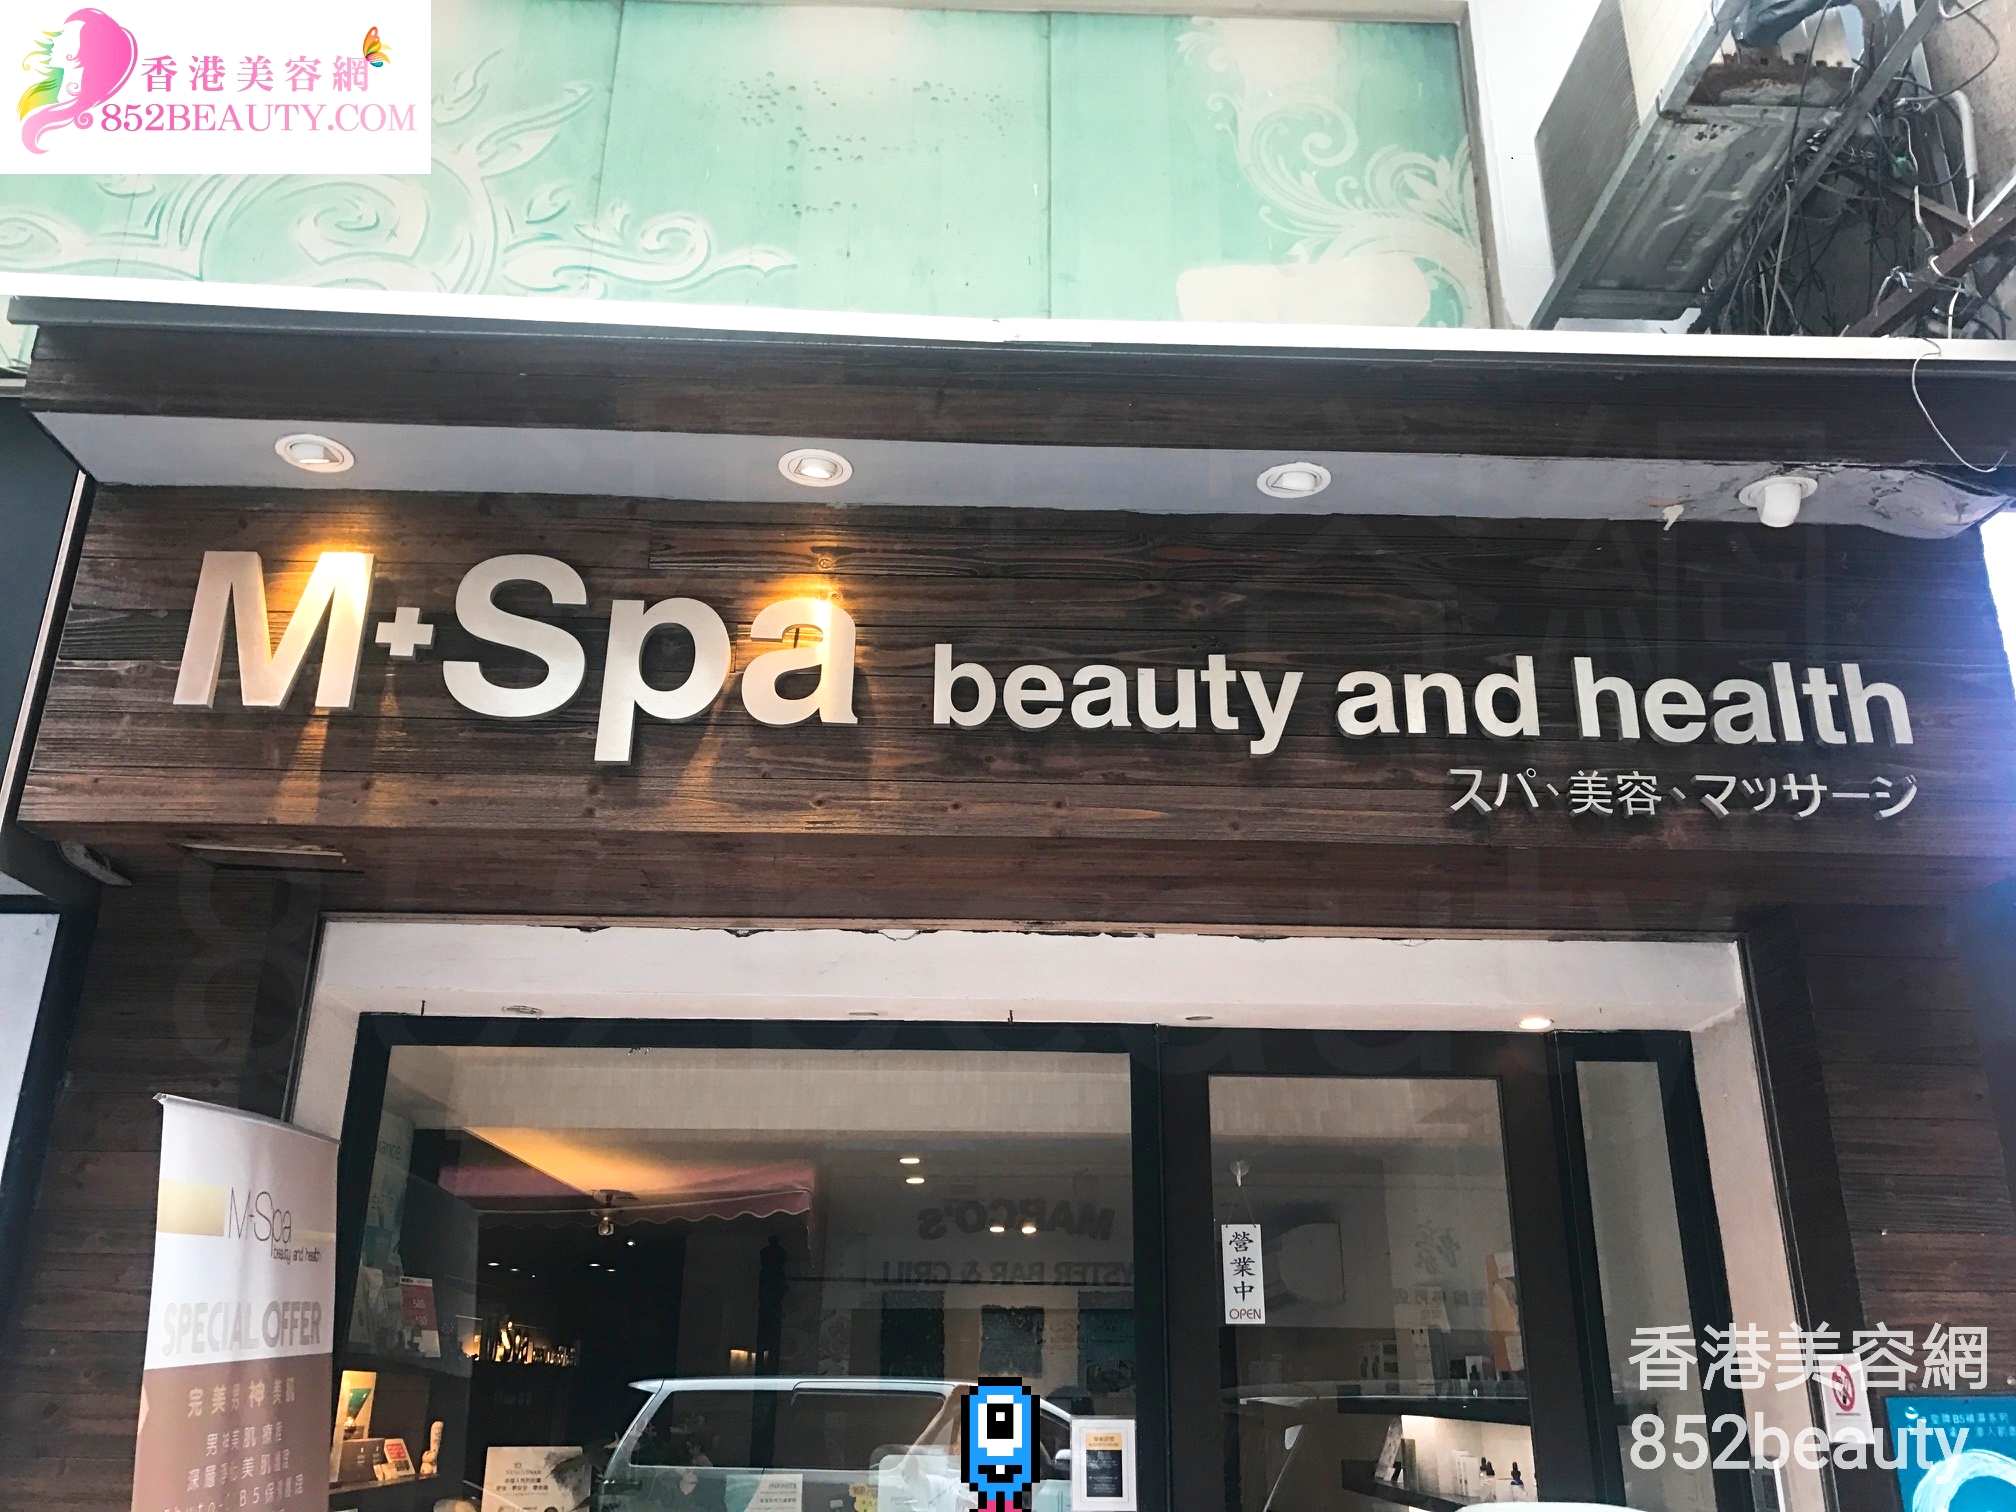 美容院 Beauty Salon: M+Spa beauty and health